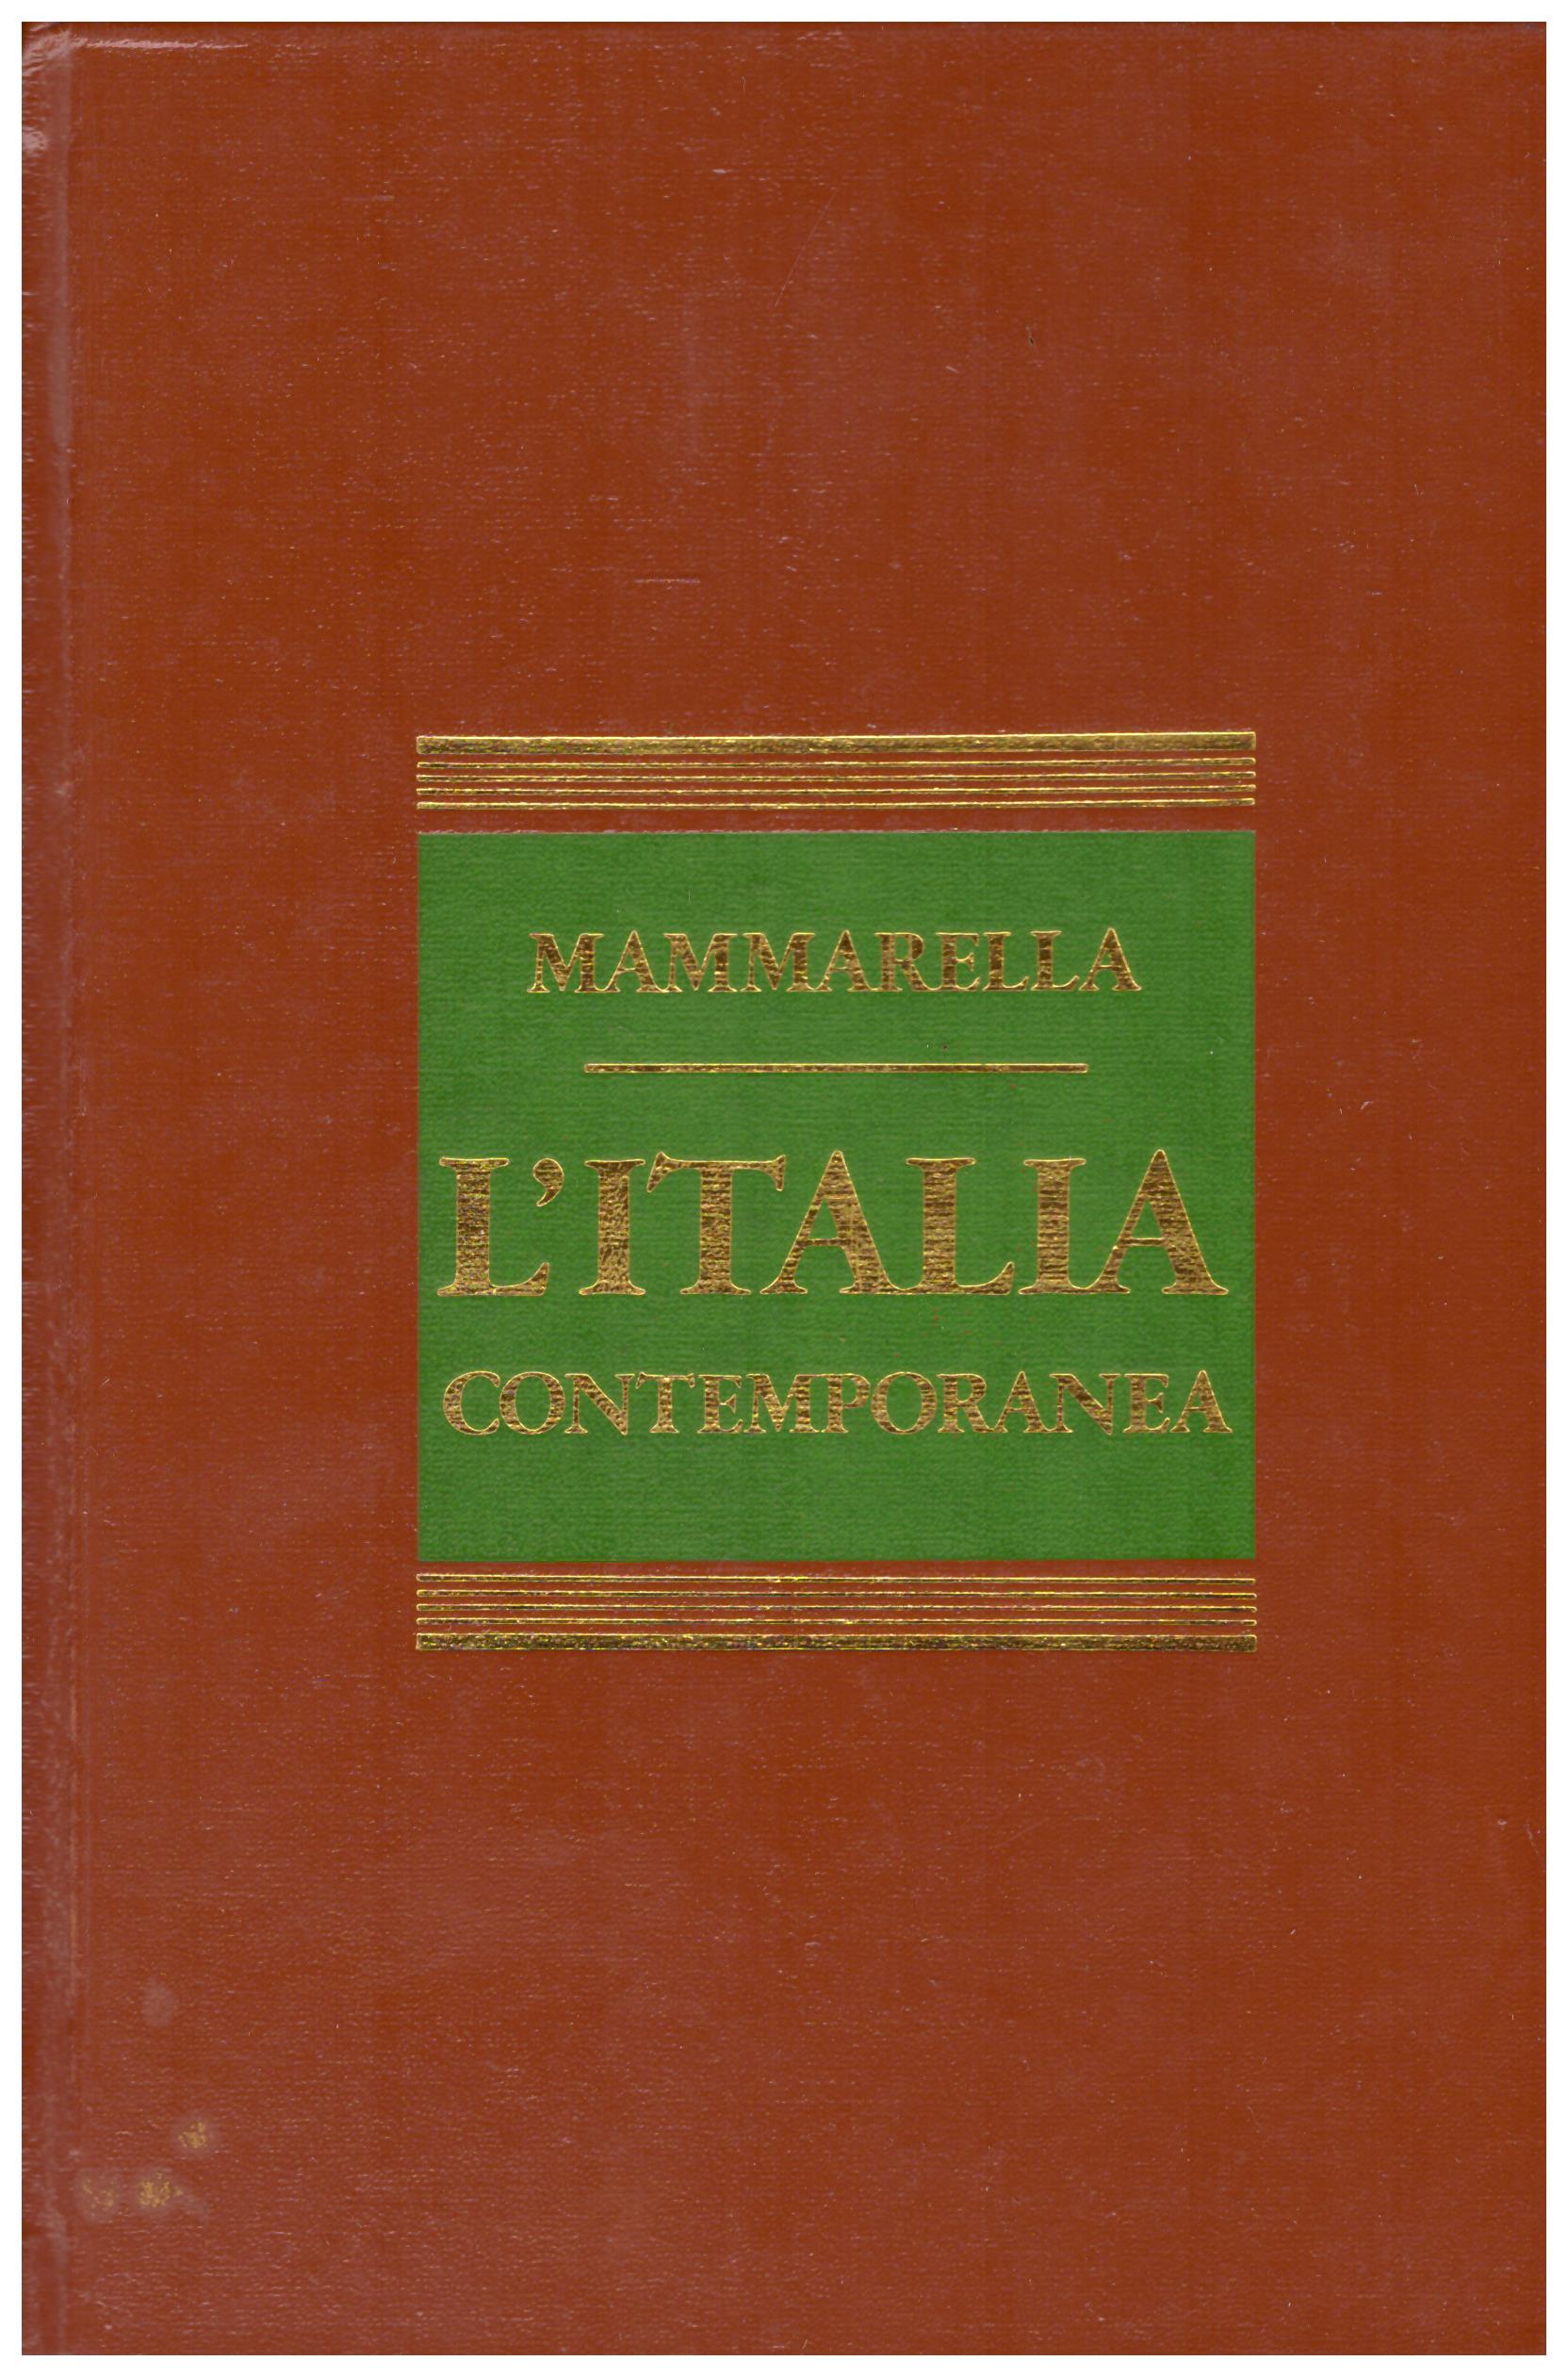 Titolo: L'italia contemporanea    Autore: Giuseppe Mammarella    Editore: Edizione CDE 1974